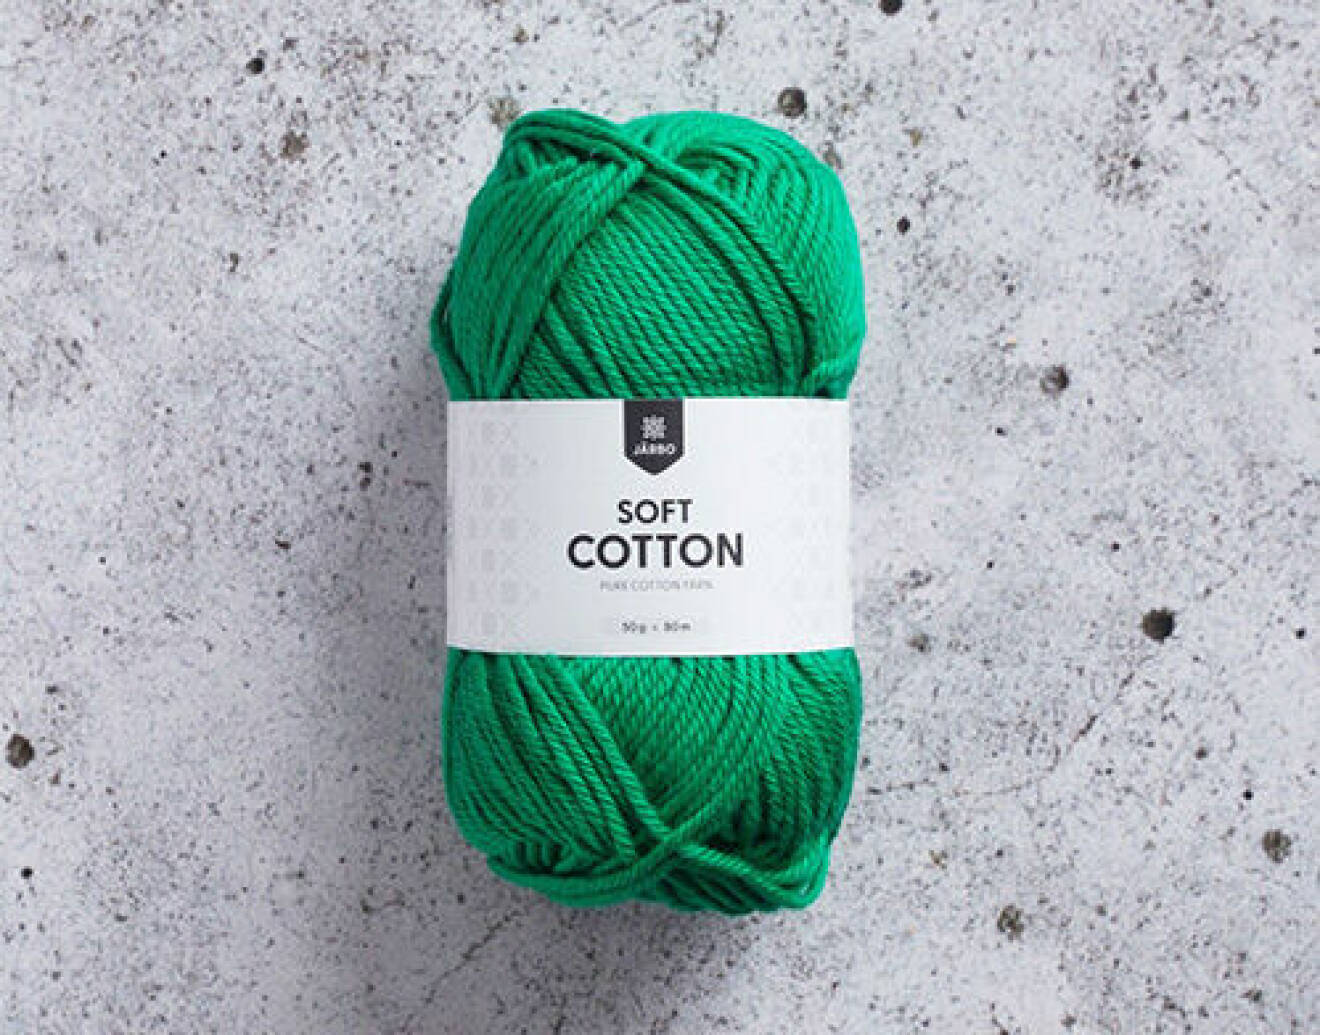 Garn Soft Cotton, Järbo Garn